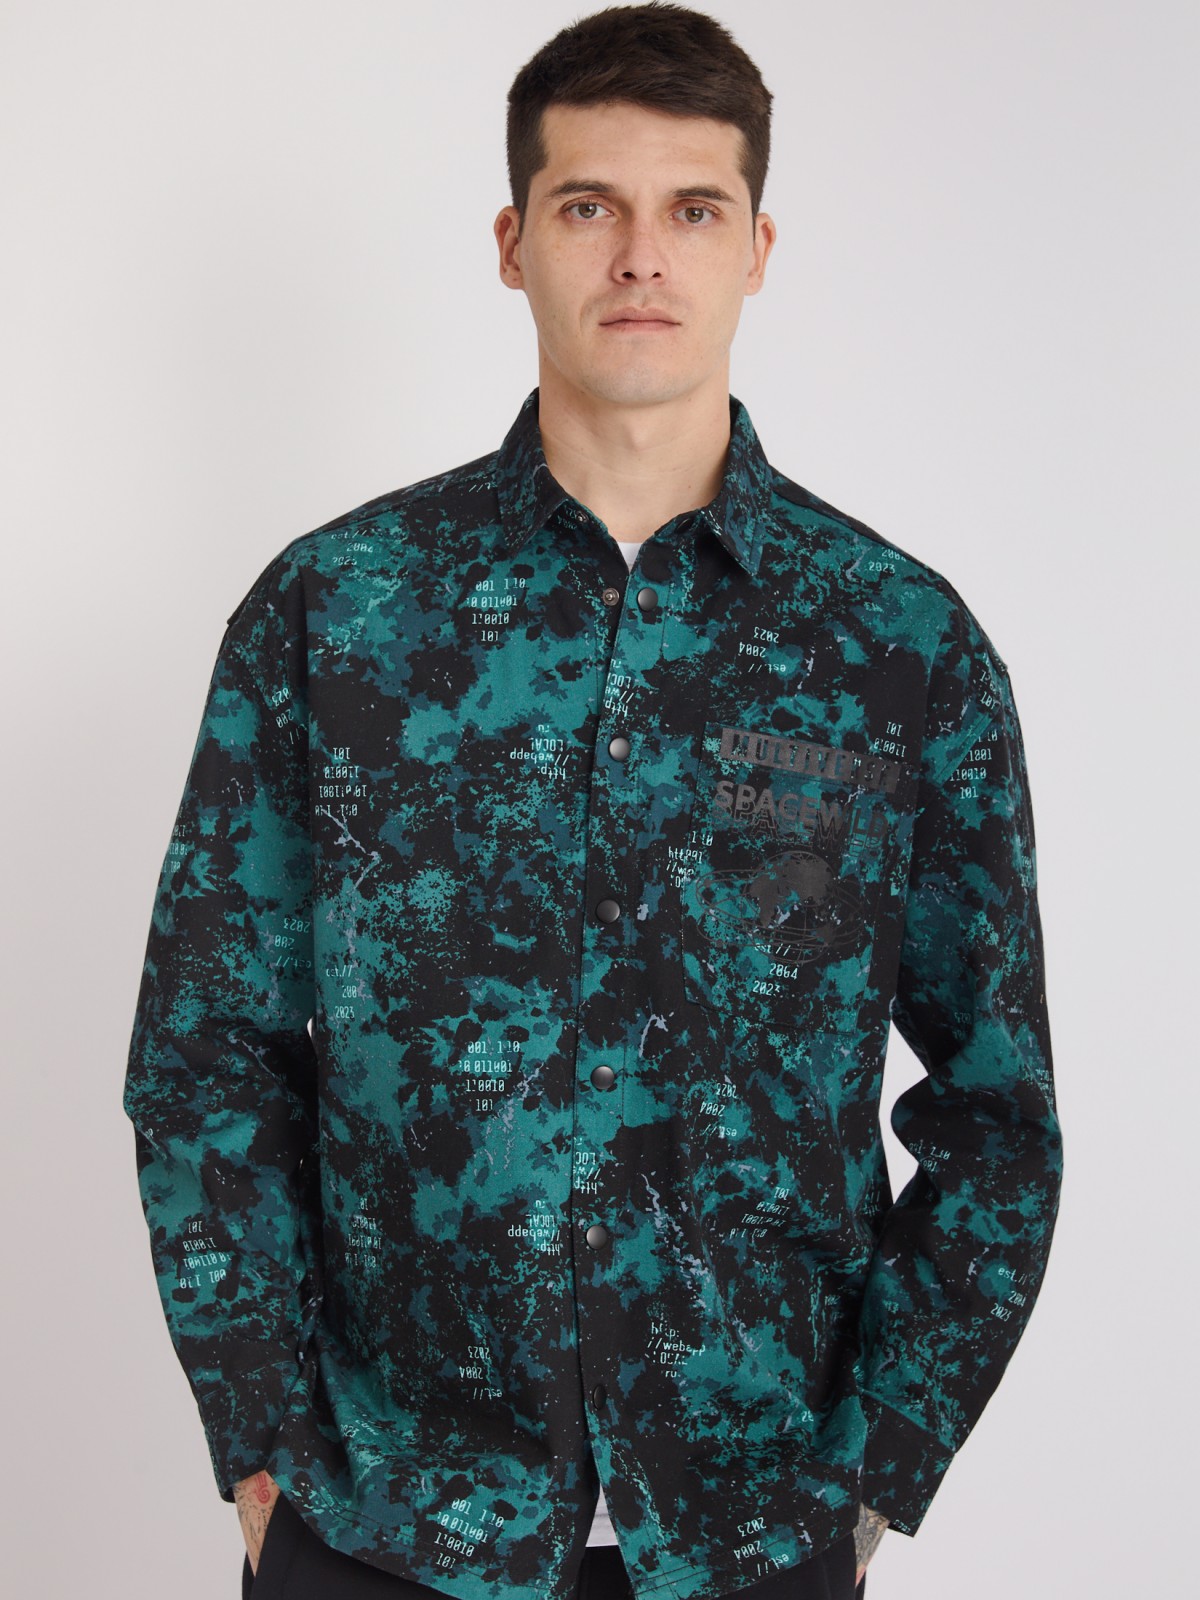 Куртка-рубашка из хлопка с принтом и нагрудным карманом zolla 213322191021, цвет бирюзовый, размер S - фото 3